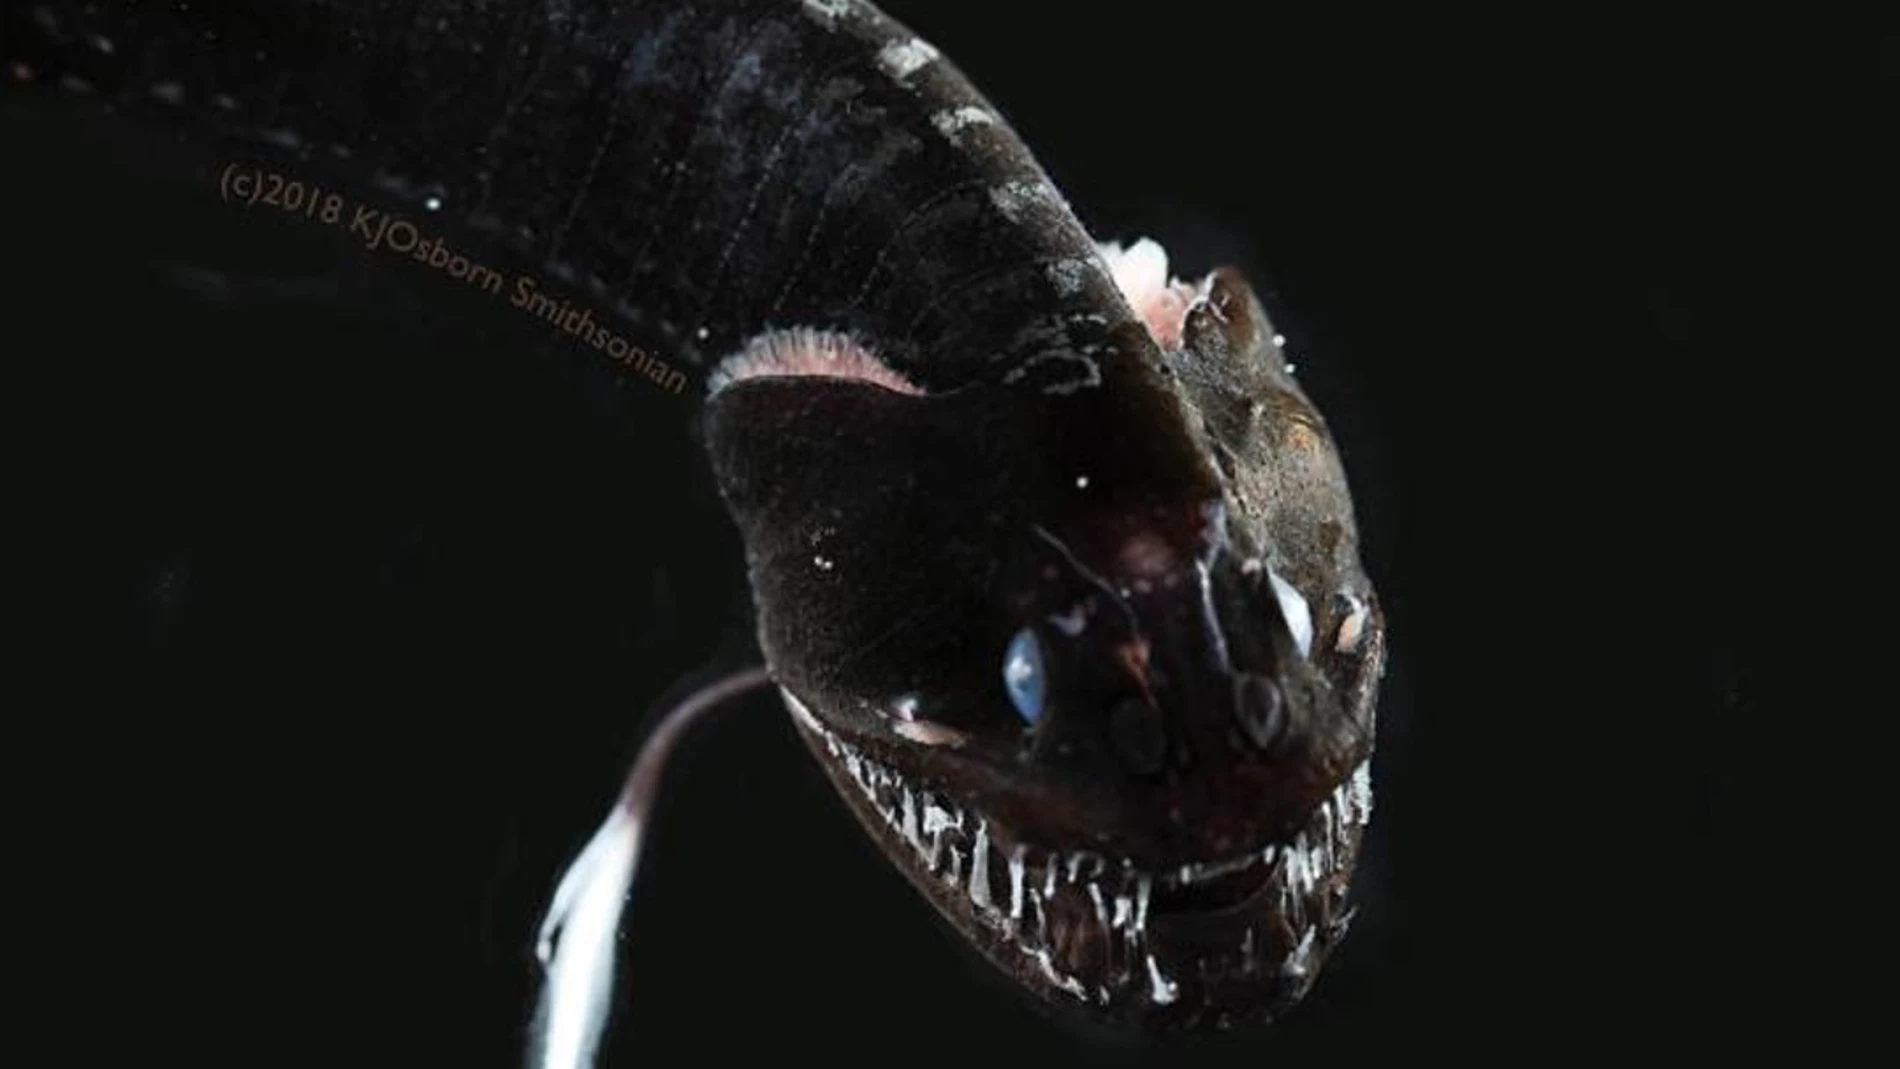 Fotografía que muestra un pez con cuerpo estrecho parecido al de una serpiente, la cabeza más ancha que el cuerpo y la boca abierta mostrando los dientes, todo muy oscuro y sobre fondo negro.